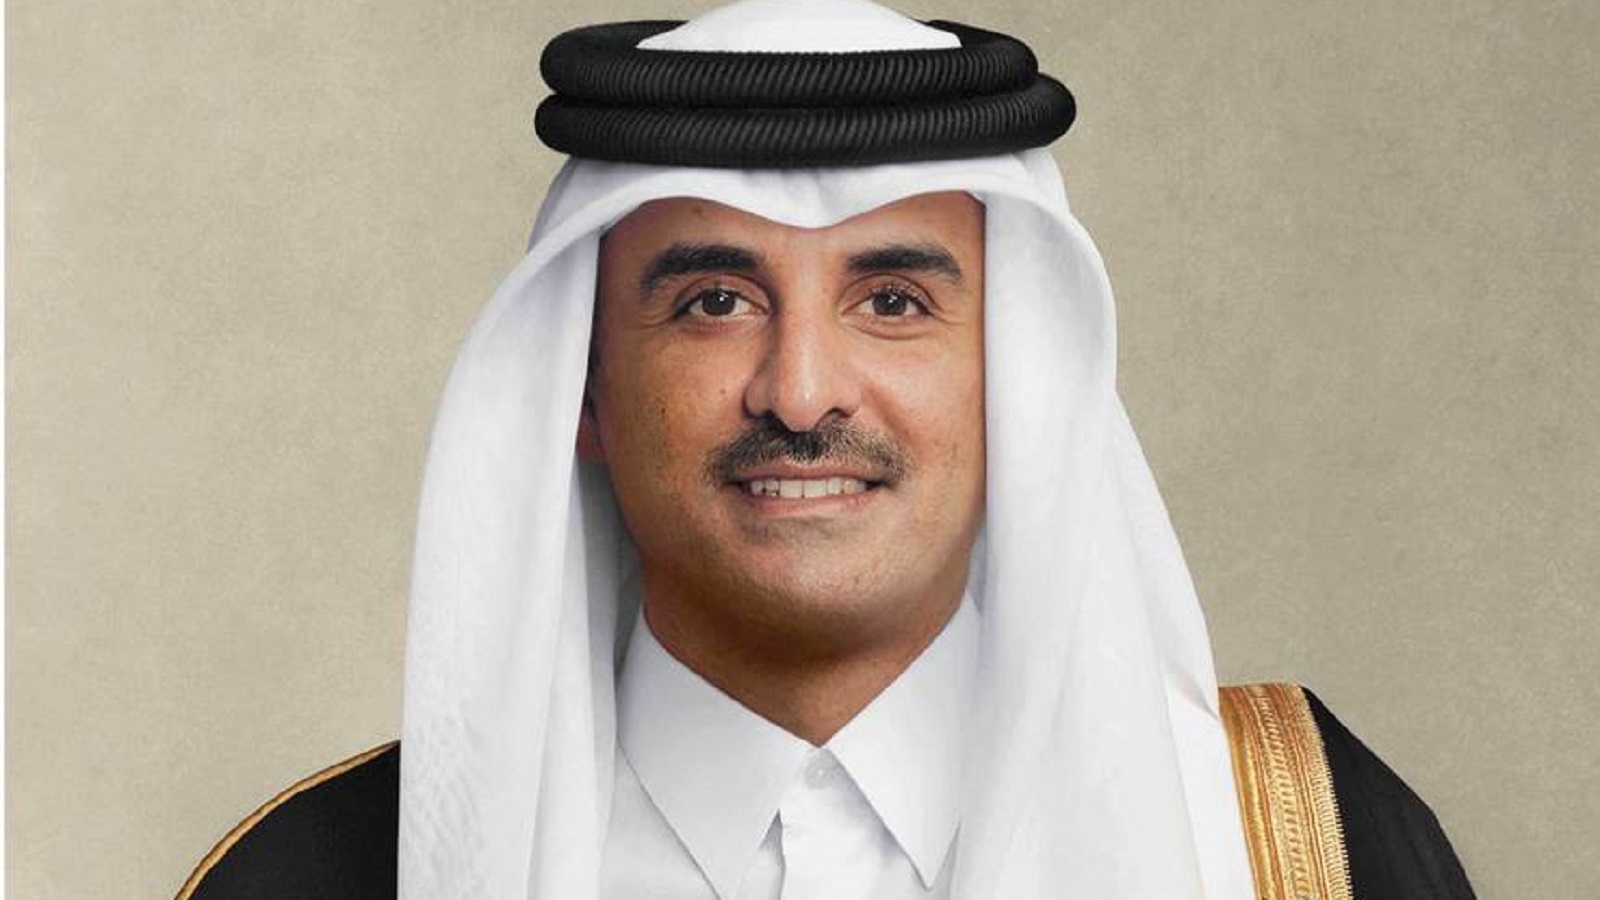 الامارات تسحب ترشيحها لاستضافة اجتماعات مالية دولية..لصالح قطر